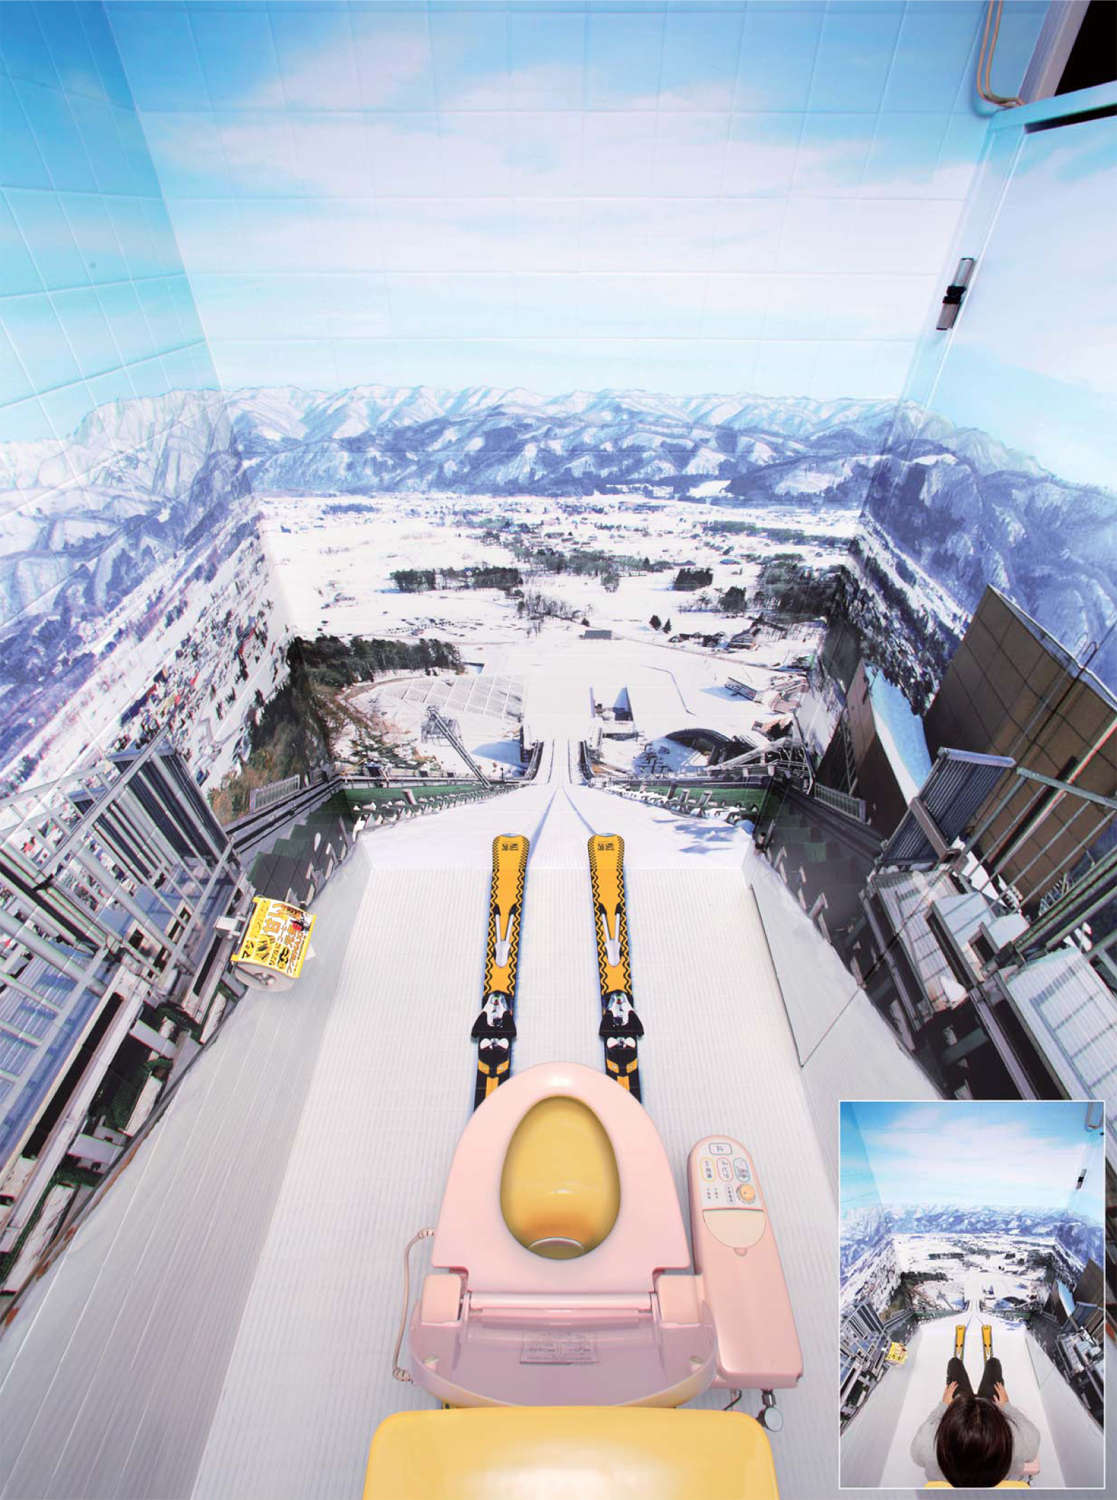 1117x1500, 200 Kb / туалет, трамплин, лыжи